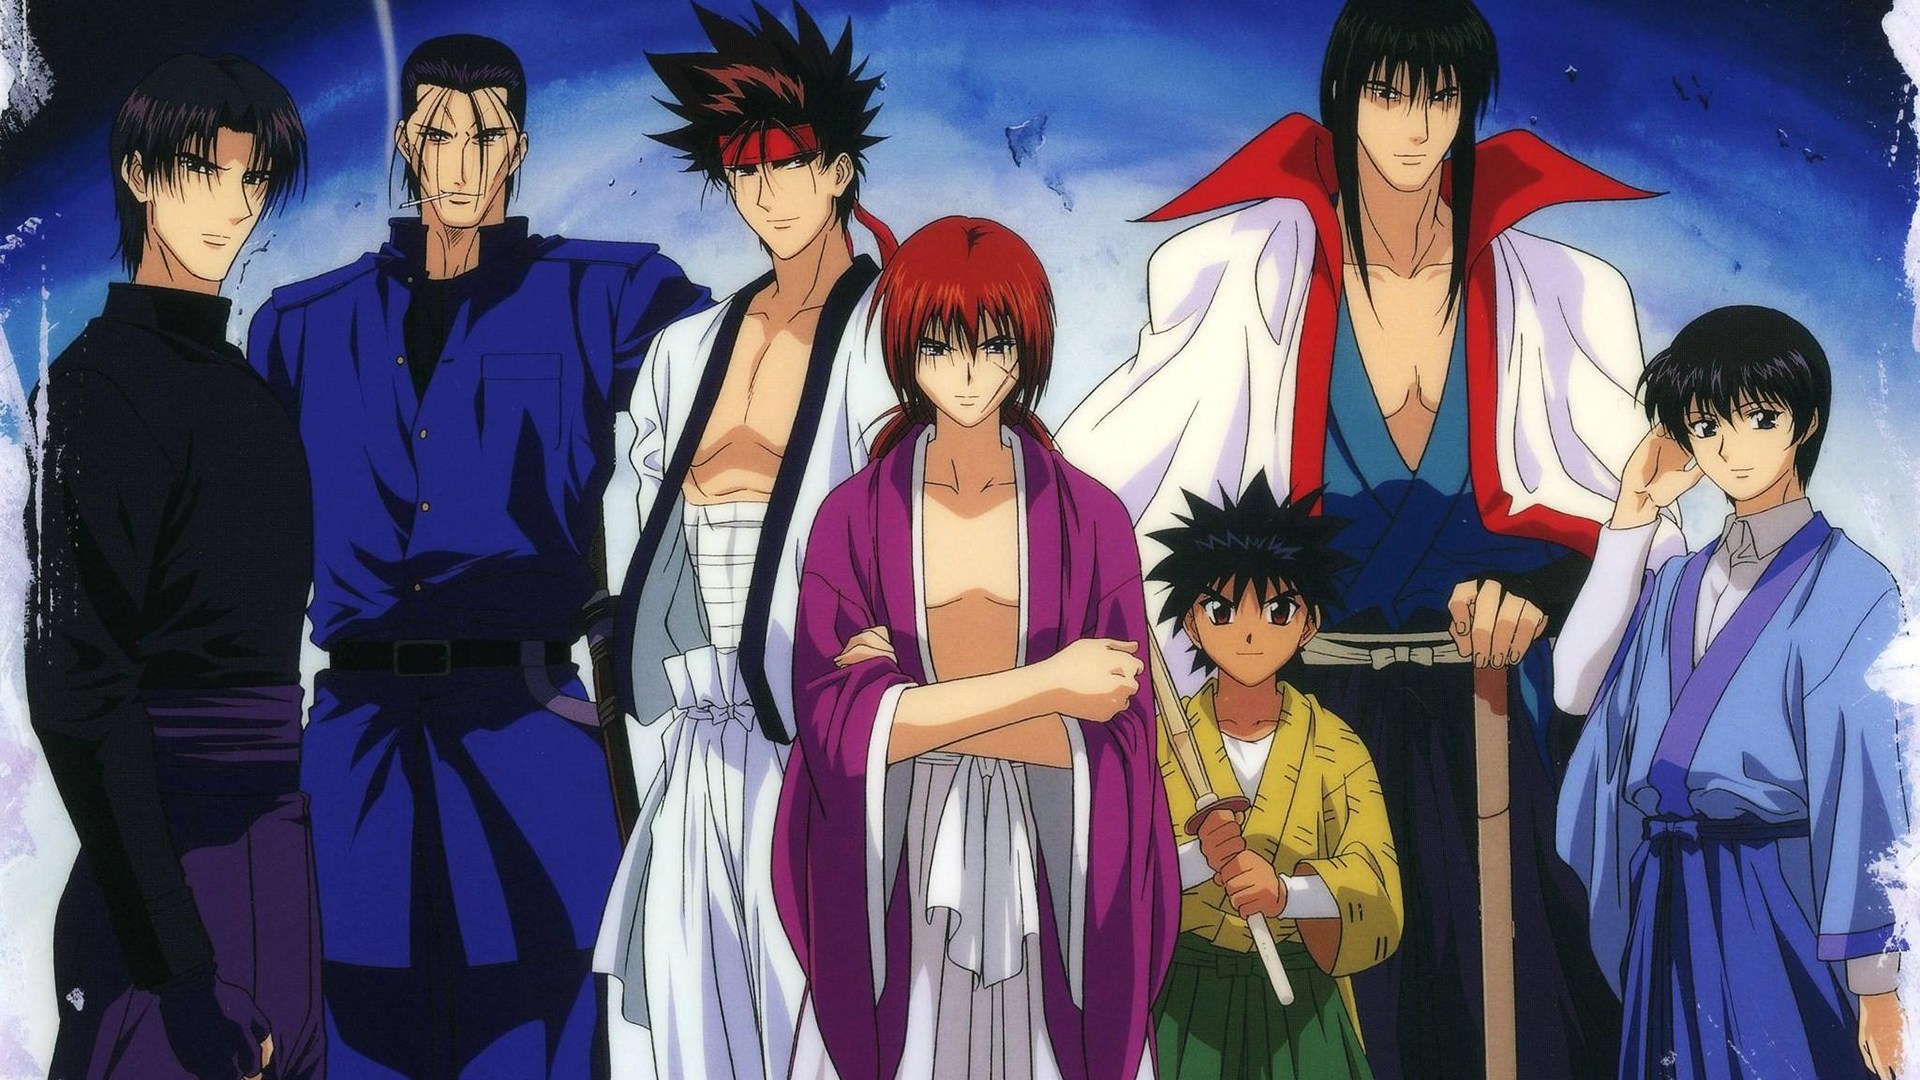 Sagara Sanosuke Rurouni Kenshin Kenshin Himura 1080p - Samurai X Rurouni Kenshin Hd , HD Wallpaper & Backgrounds